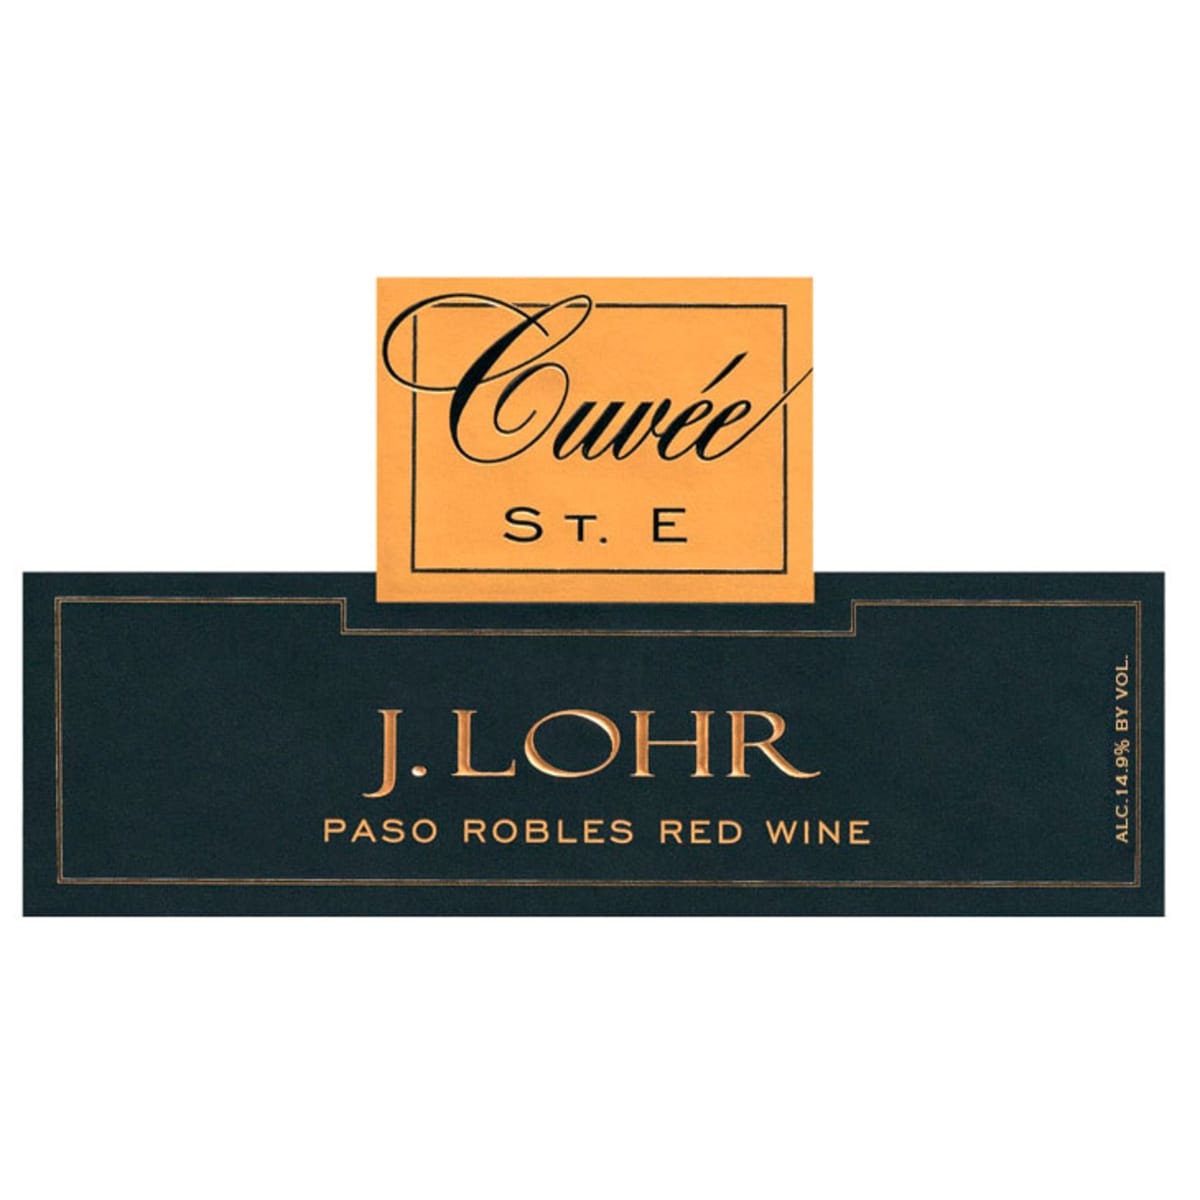 J. Lohr Cuvee St. E 2012 Front Label